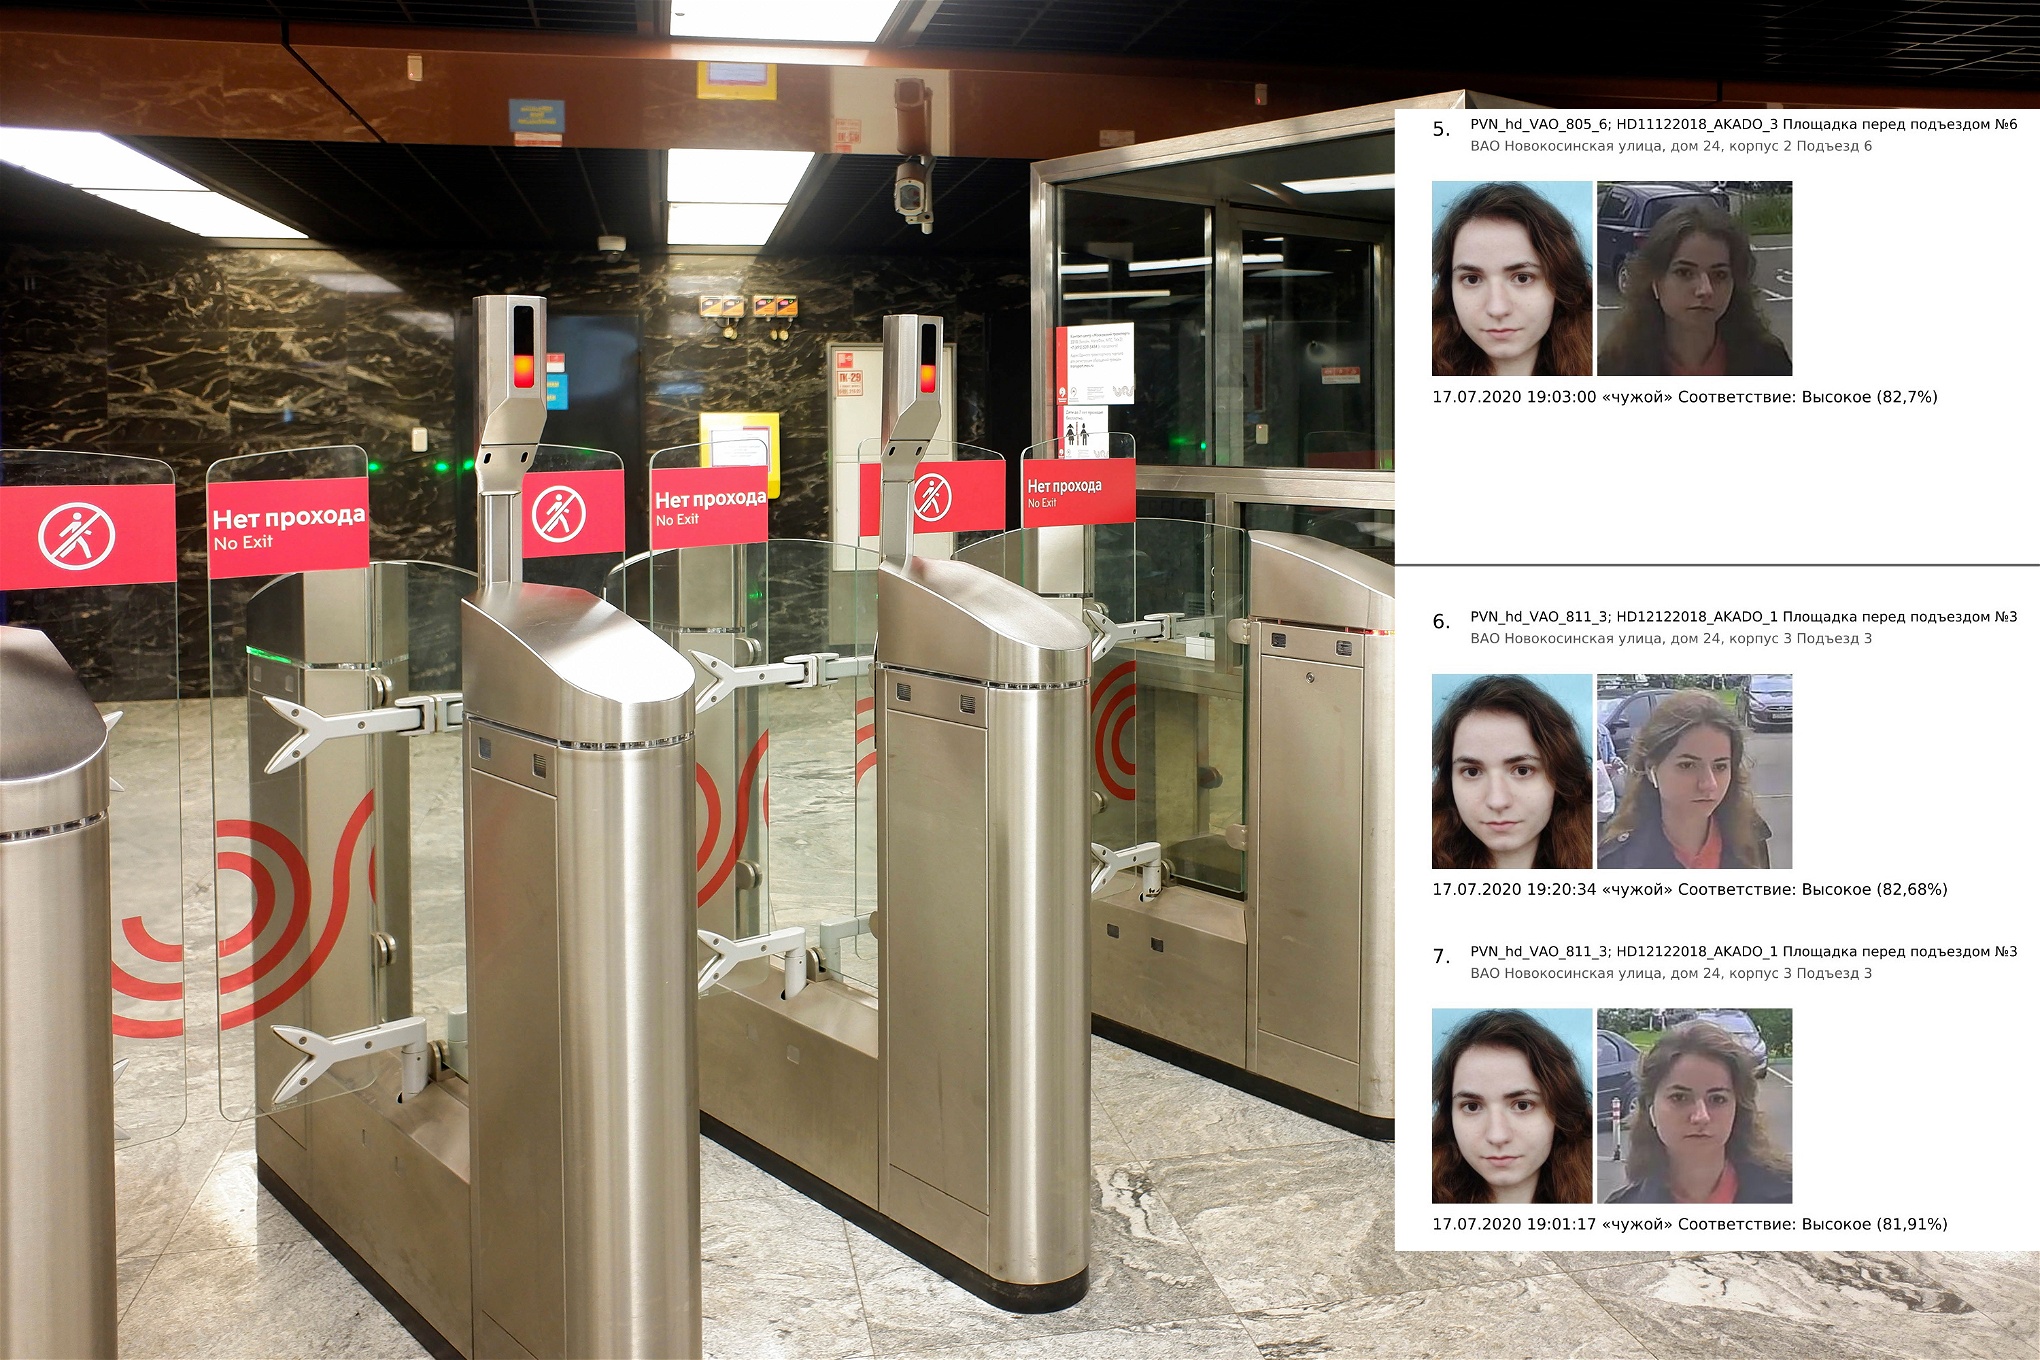 Tunnelbanespärrar utrustade med ansiktsigenkänning i Moskvas tunnelbana. Samt en bild ur en rapport som visar övervakningsbilder på en person som går att köpa på den svarta marknaden.